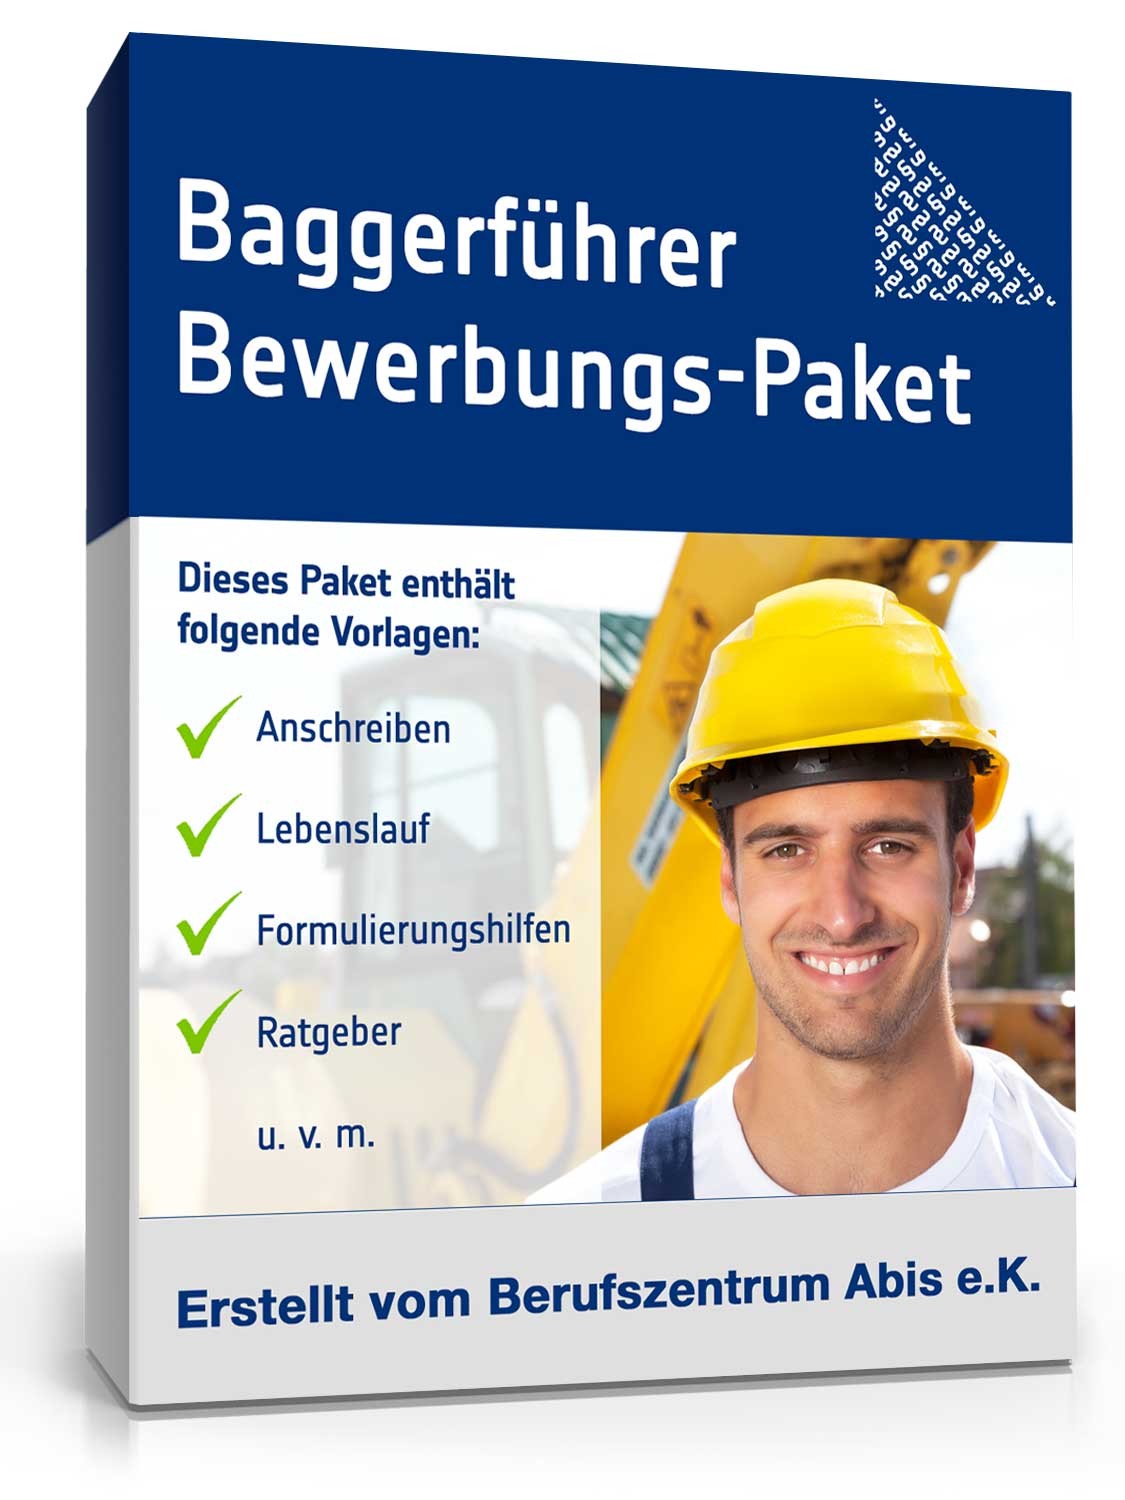 Hauptbild des Produkts: Bewerbungs-Paket Baggerführer